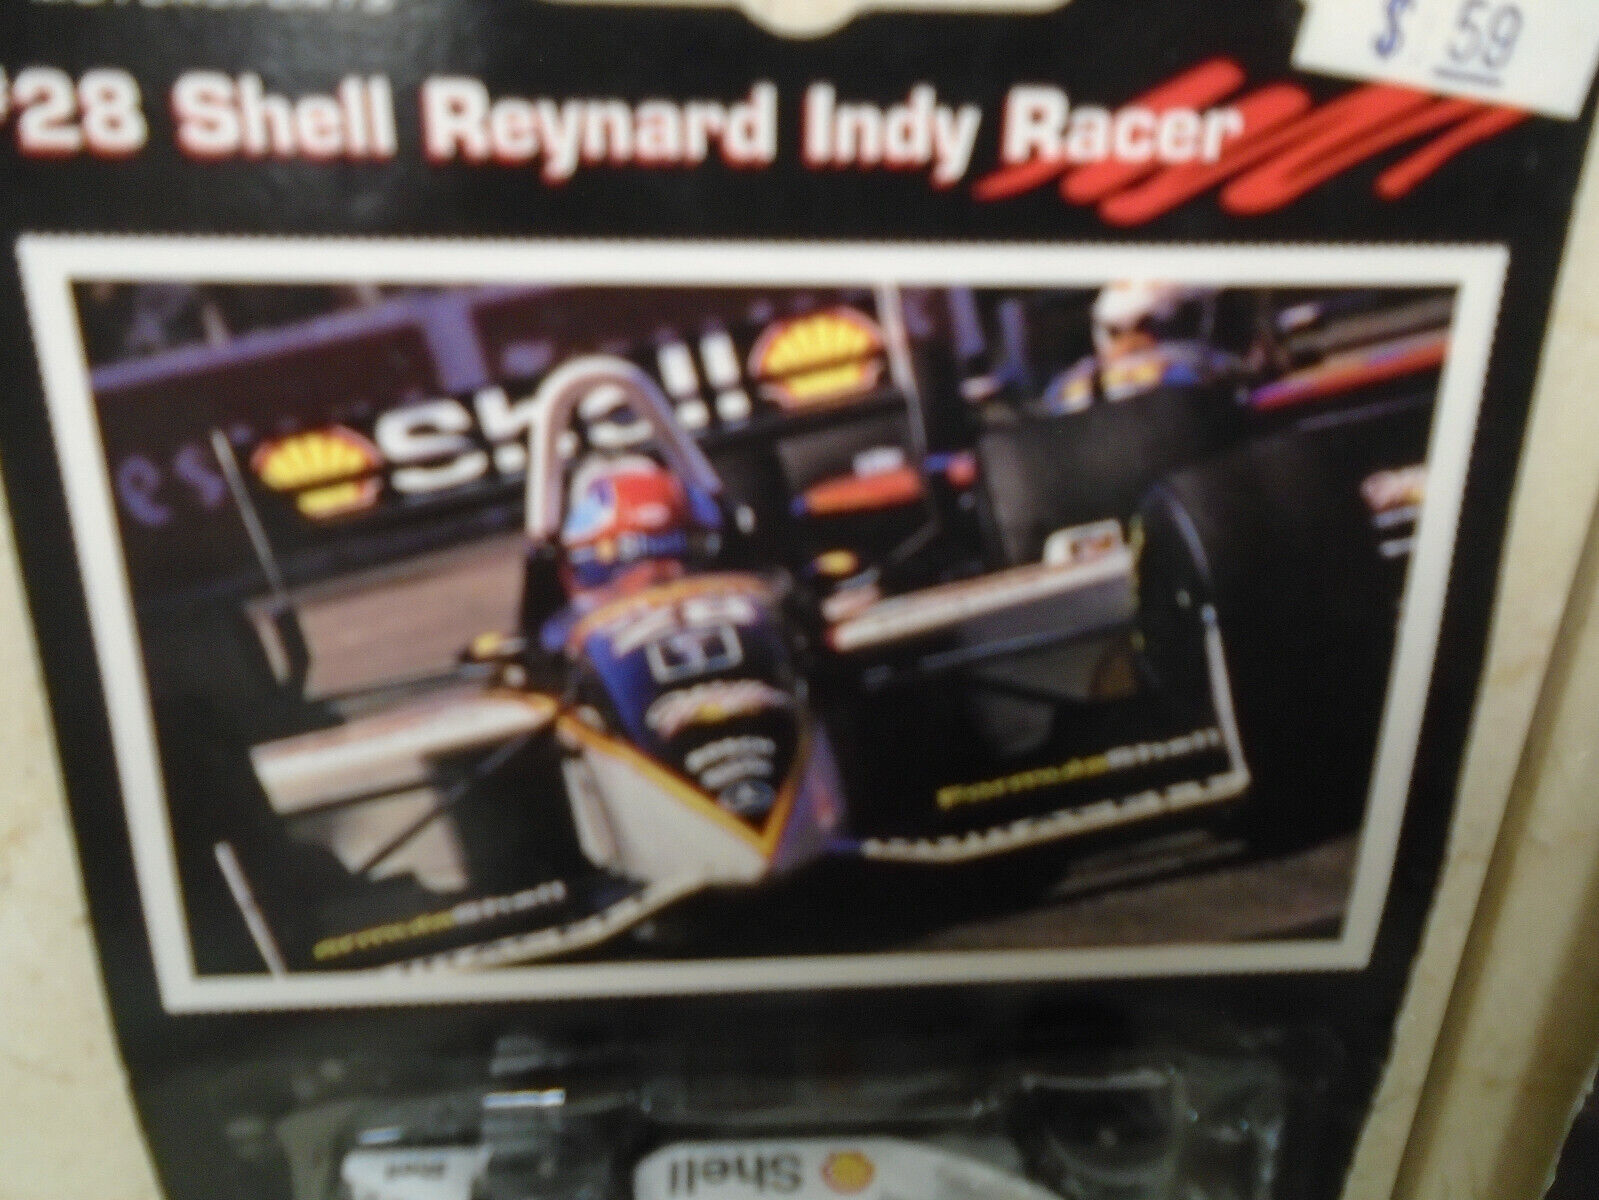 NEW Shell Reynard Indy Racer Cars #28 Die Cast 1996 Shell Oil Motorsports LOT 4  Shell, EPI, Shell Motorsports - фотография #9